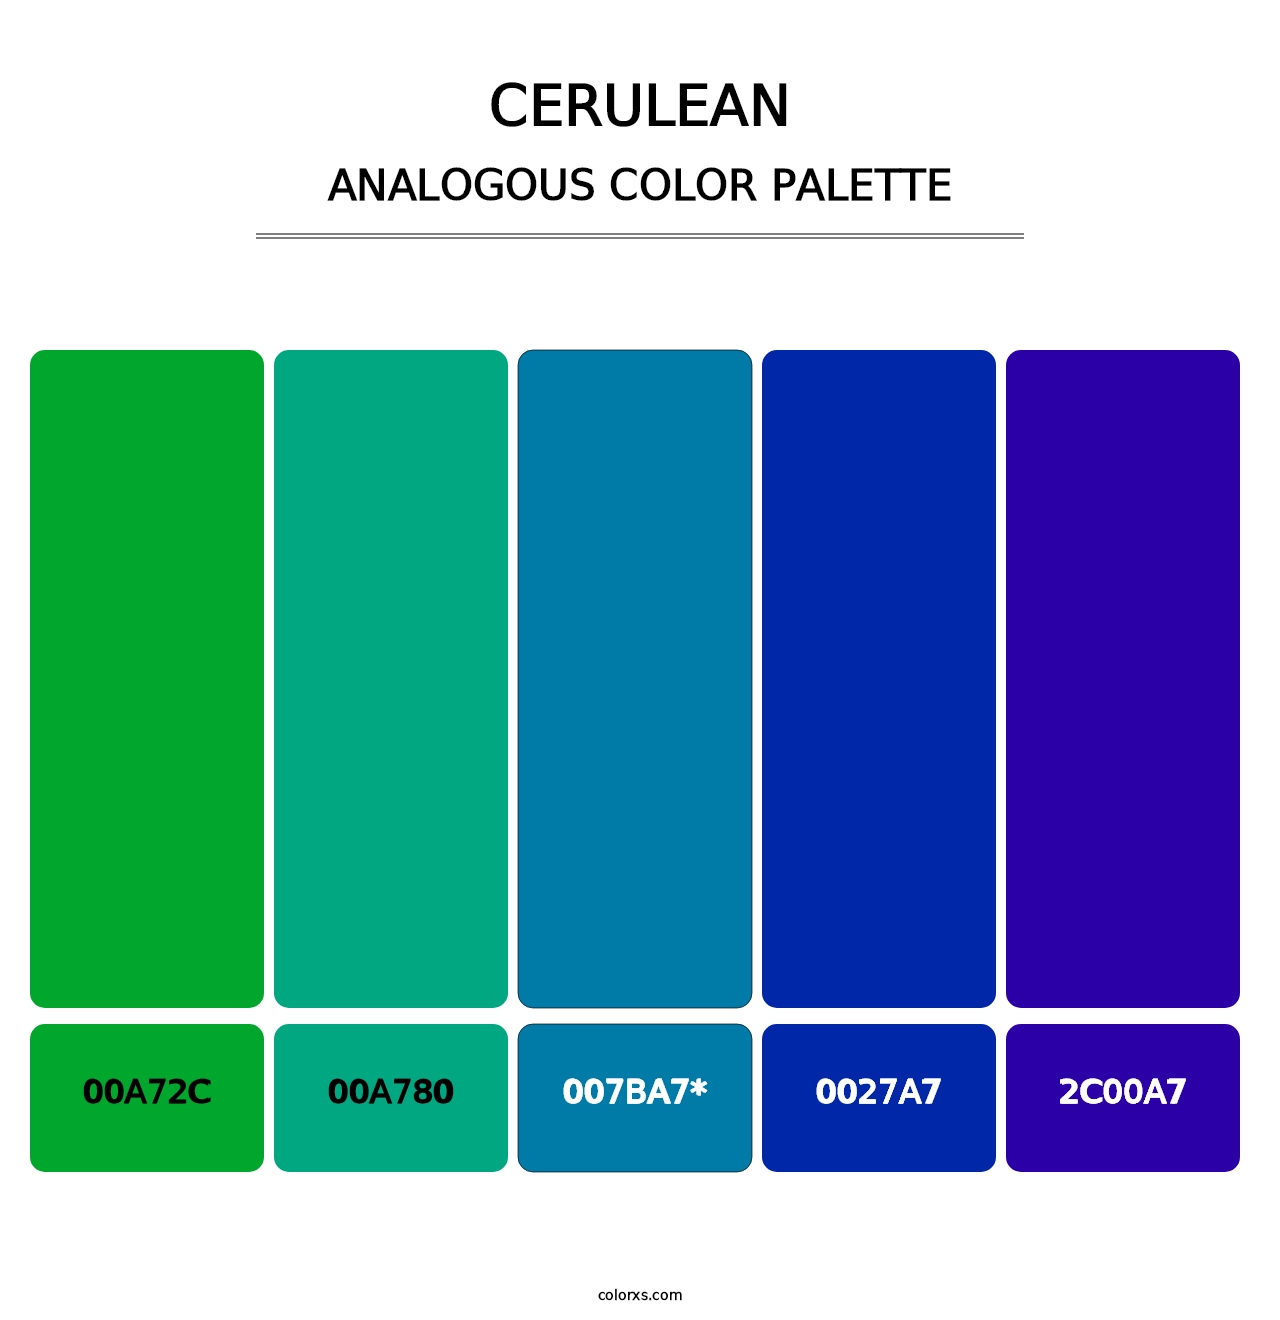 Cerulean - Analogous Color Palette